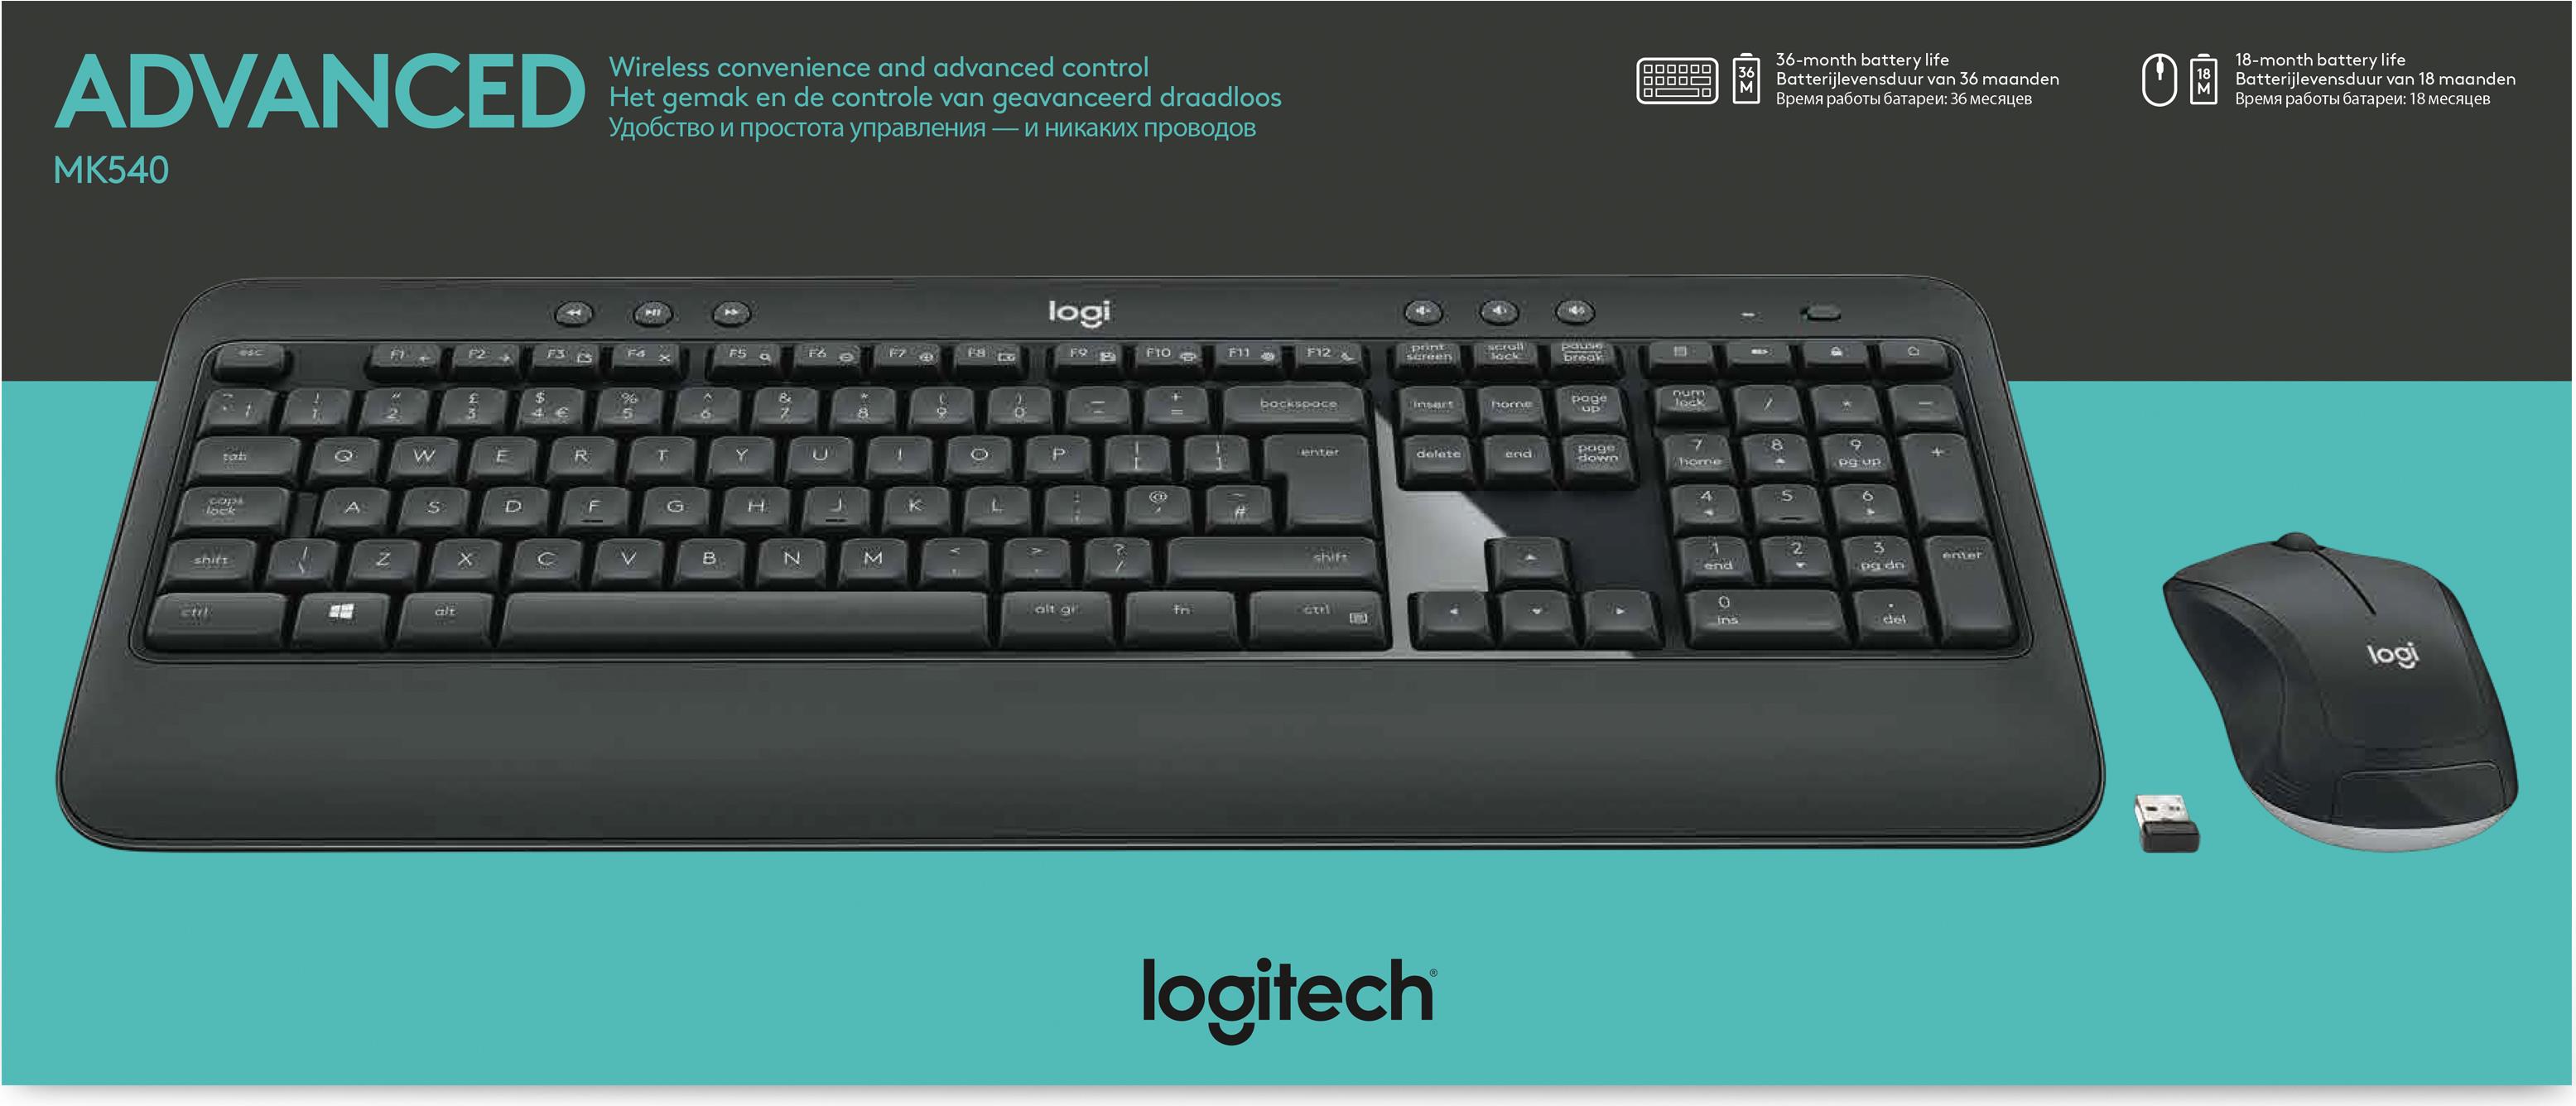 Logitech MK540 Advanced (920-008684)